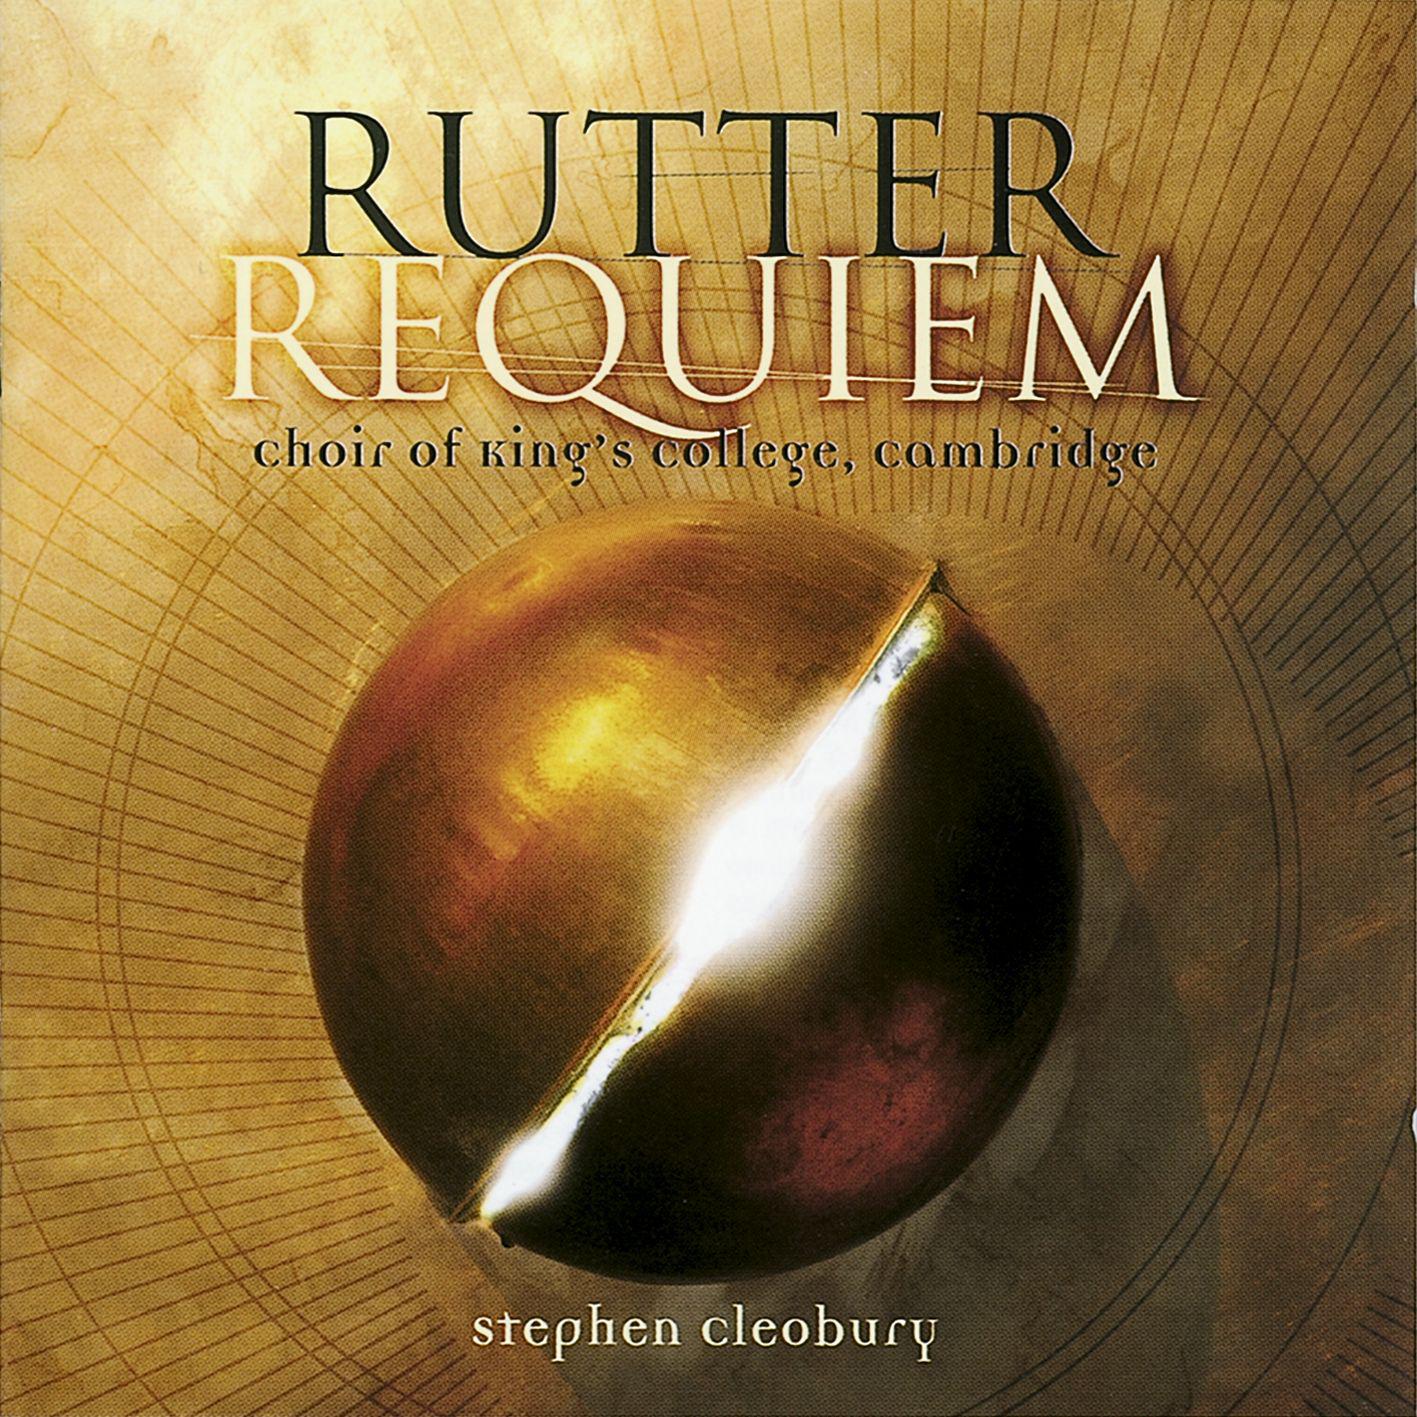 Rutter: Requiem